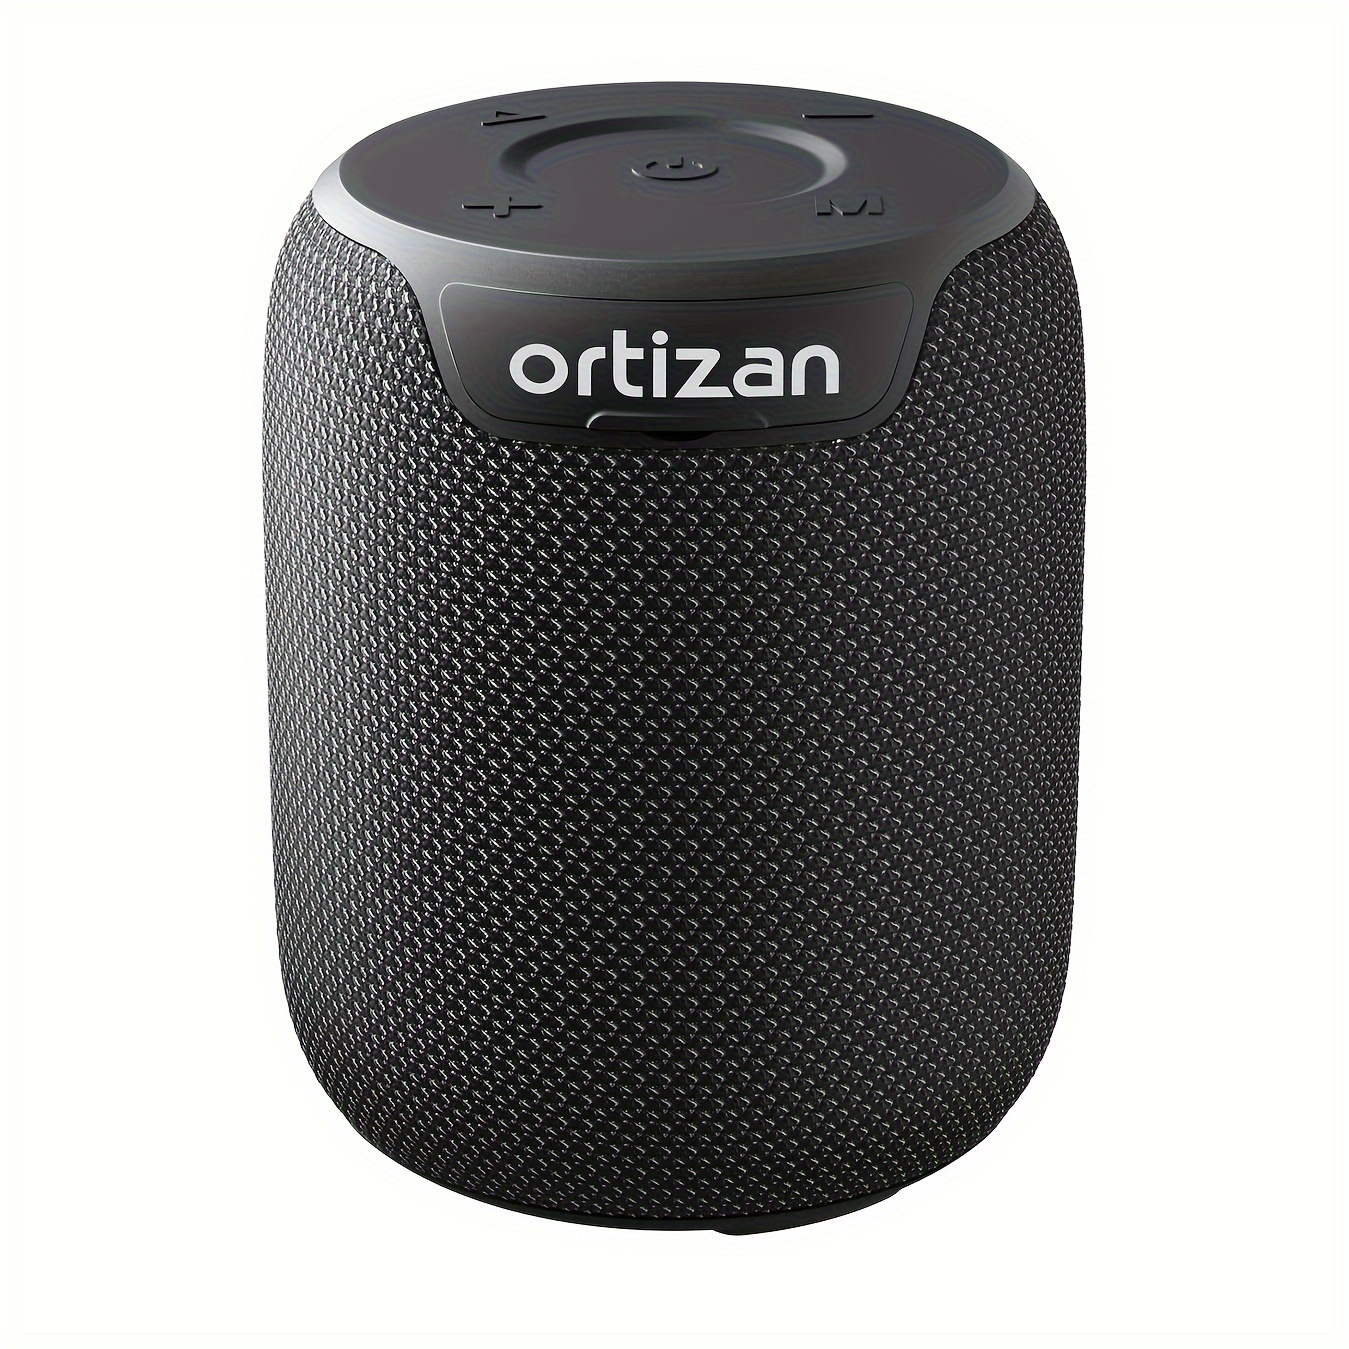 Ortizan Altavoz Bluetooth de 80 W, sonido potente y graves profundos, IPX7  impermeable, 12 horas de tiempo de reproducción, banco de energía